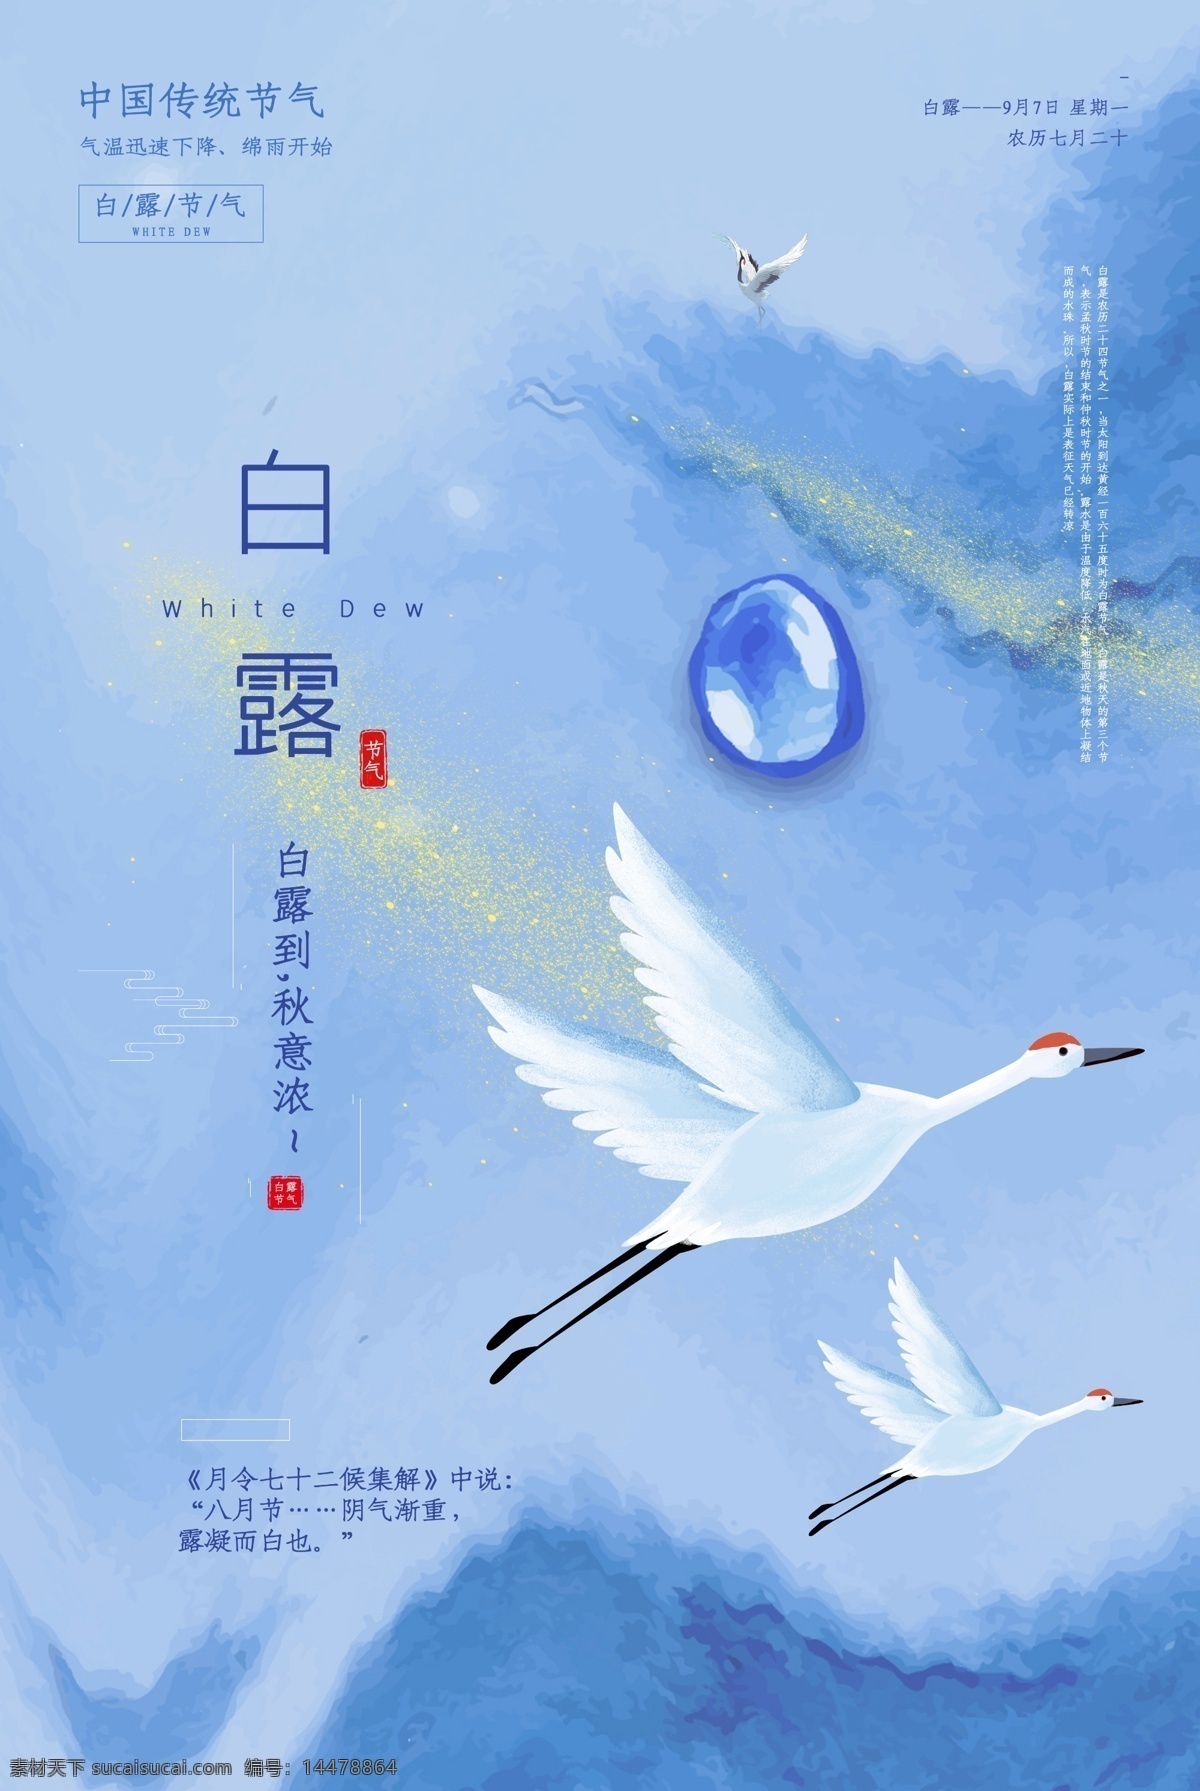 白露 传统节日 活动 促销 海报 传统 节日